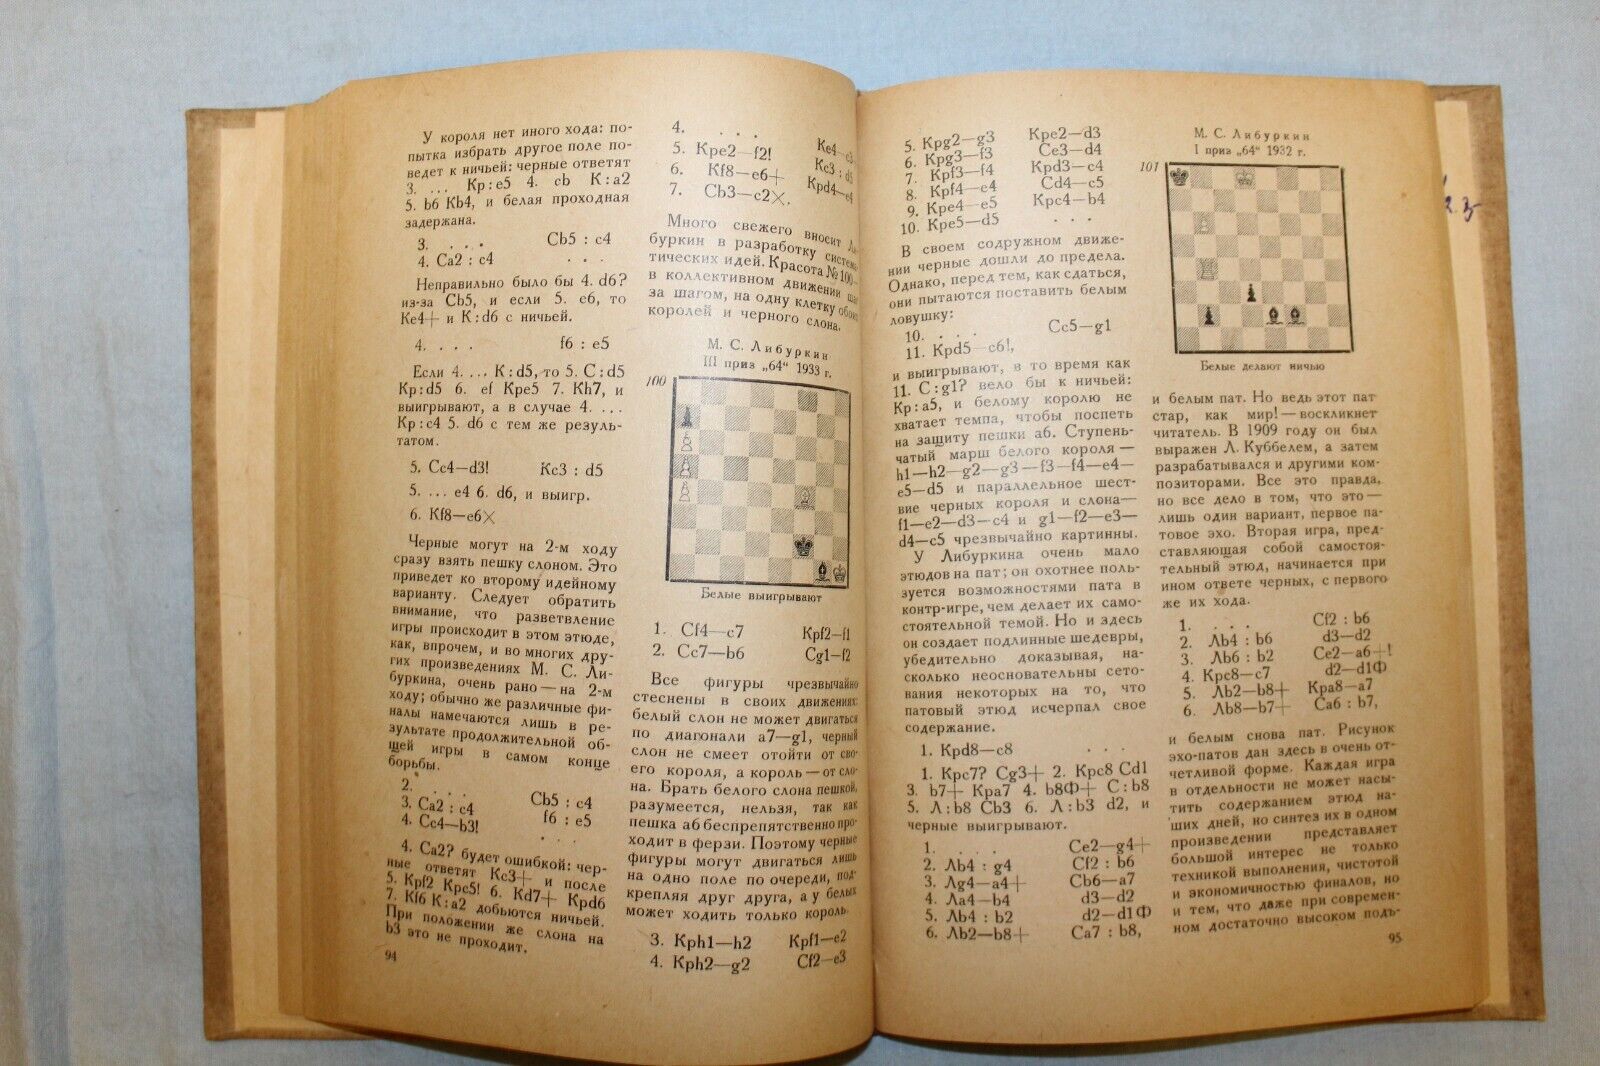 11710.Soviet Chess Book: A. Gerbstman. Modern Chess Endgame Study. 1937